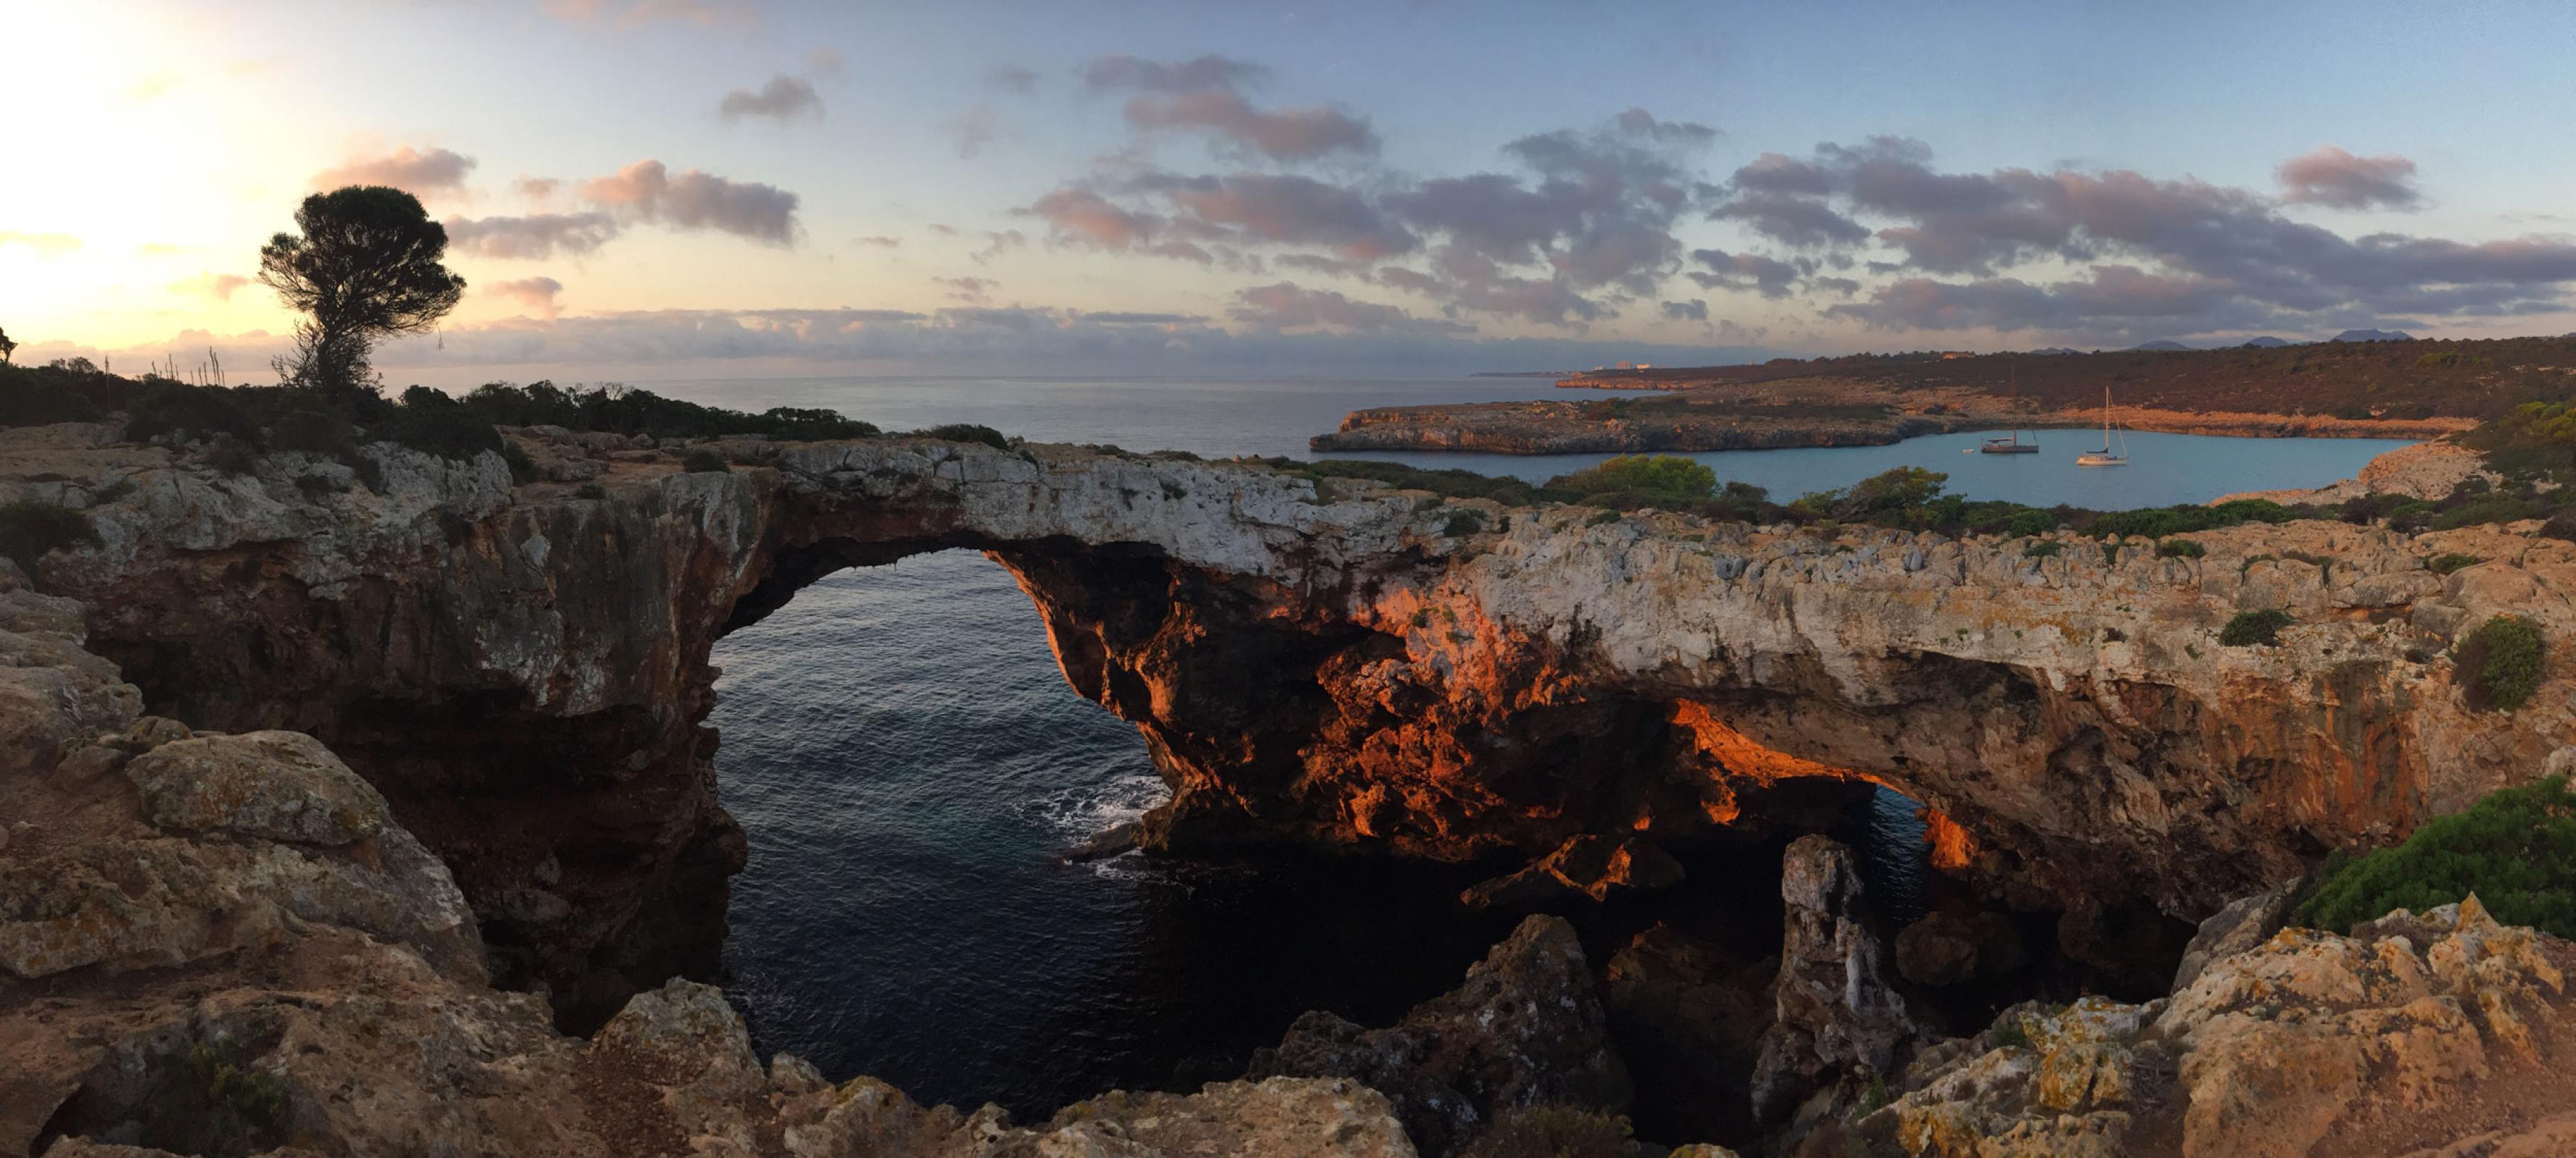 Küste bei Cala Varques auf Mallorca am frühen Morgen